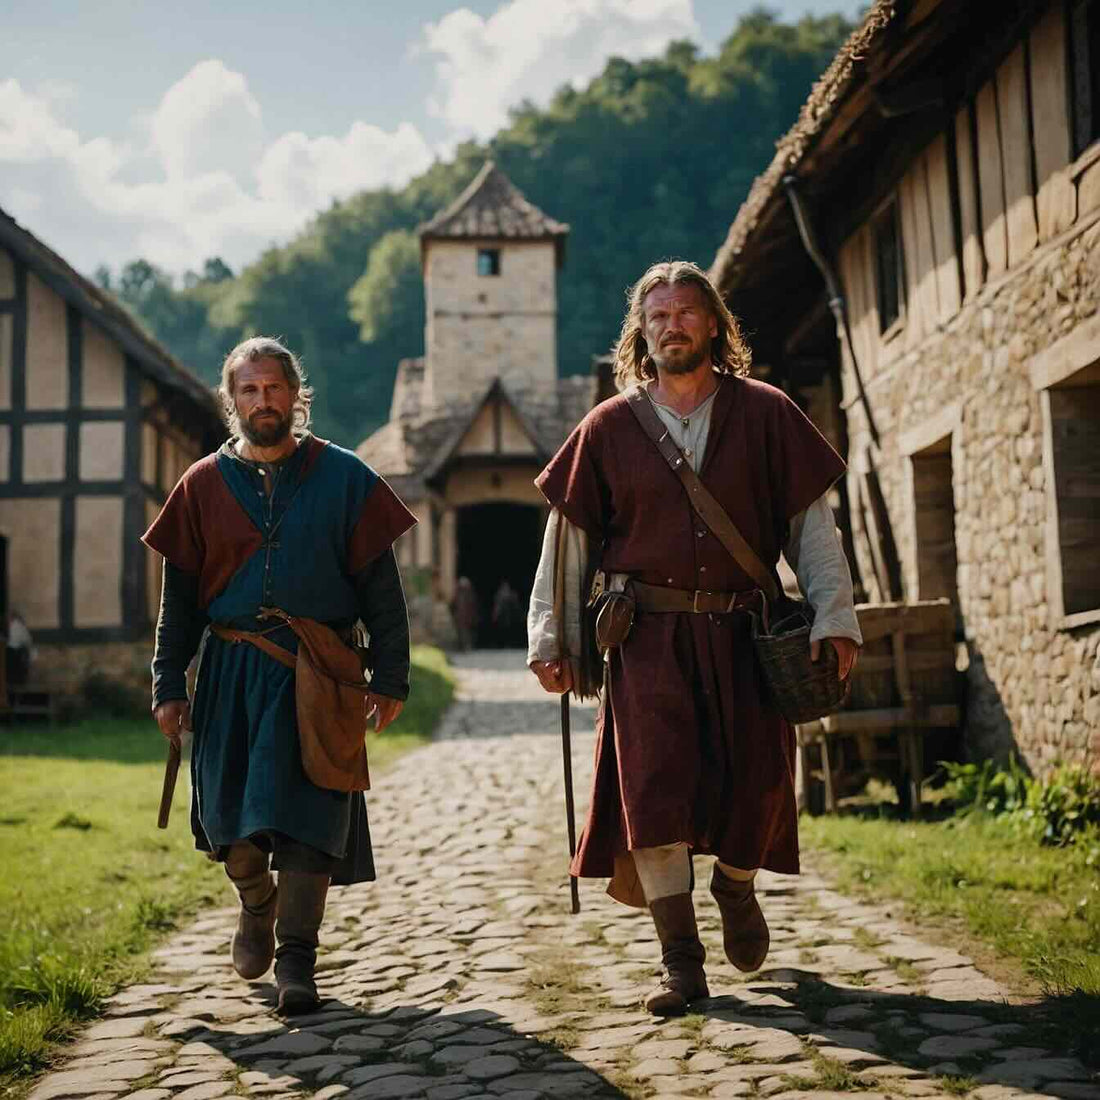 Medieval Peasant Clothing